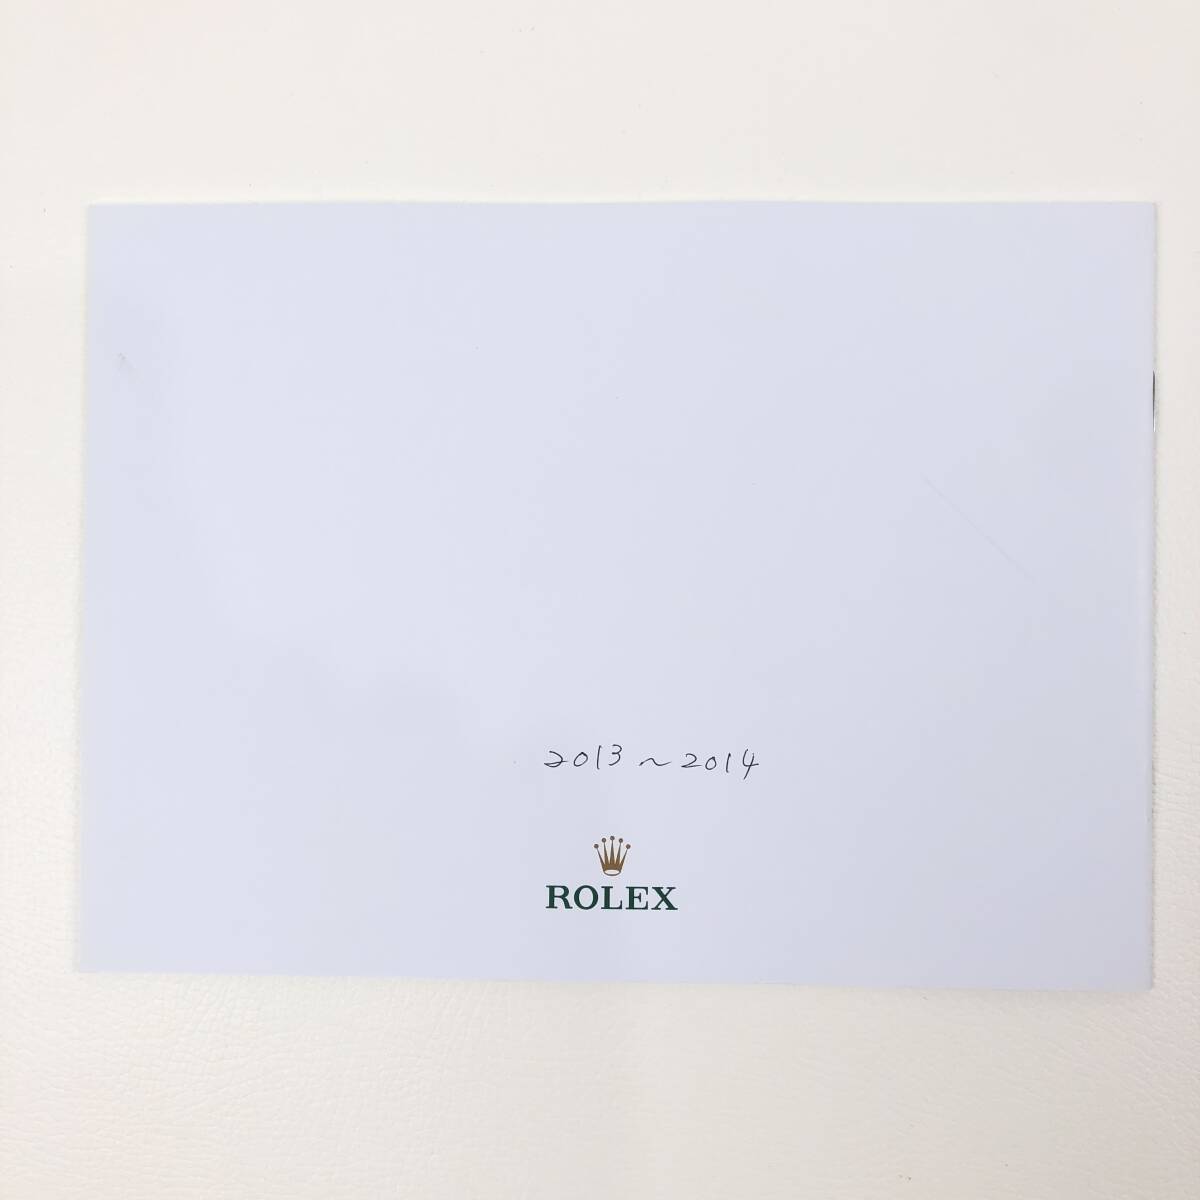 ROLEX 2013-14 カタログ / ソフトカバー / プライスリスト付き / 書籍 本 管11